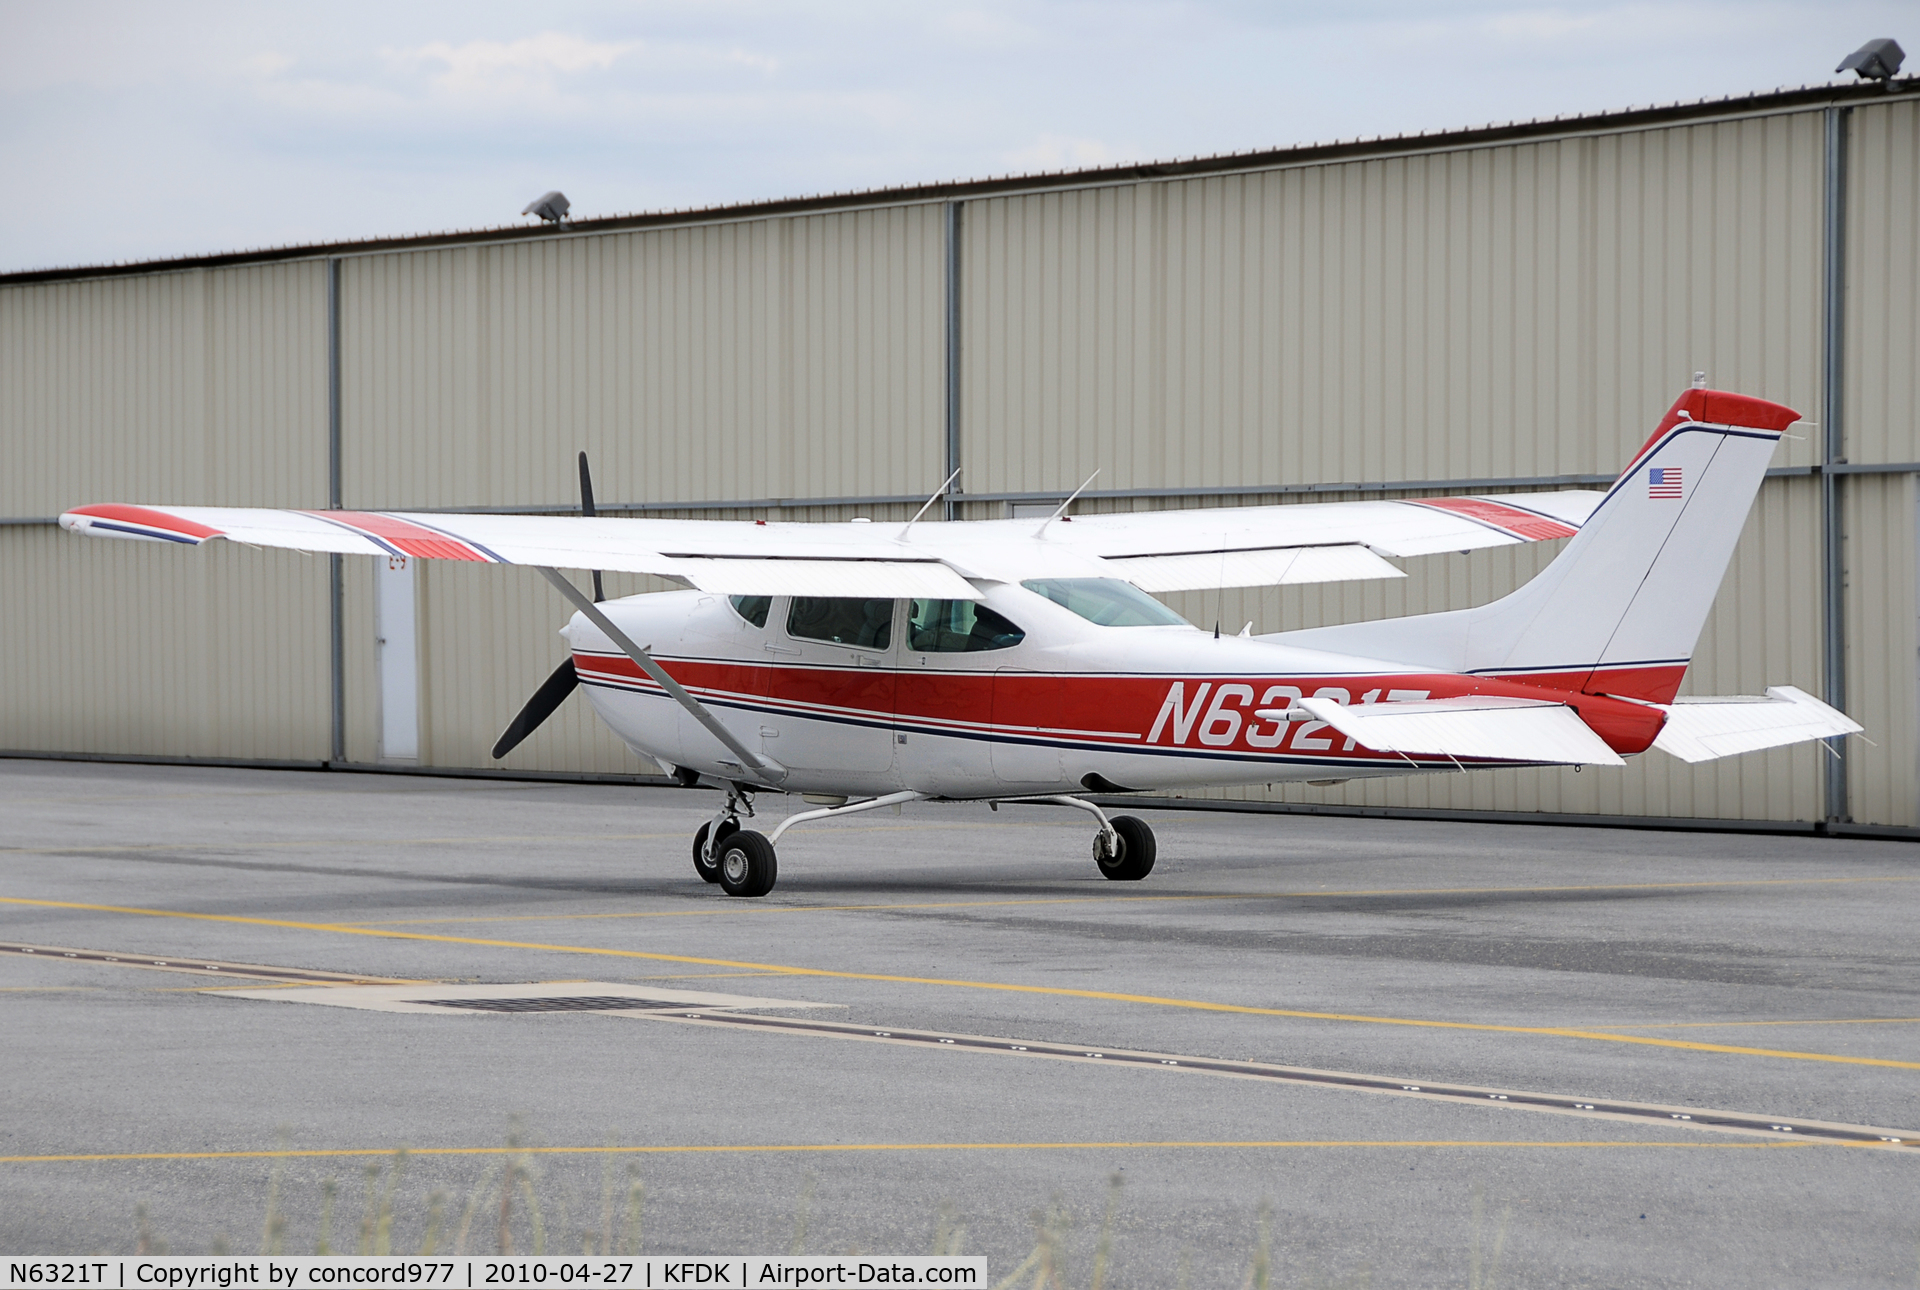 N6321T, 1984 Cessna R182 Skylane RG C/N R18201978, Seen at KFDK on 4/27/2010.